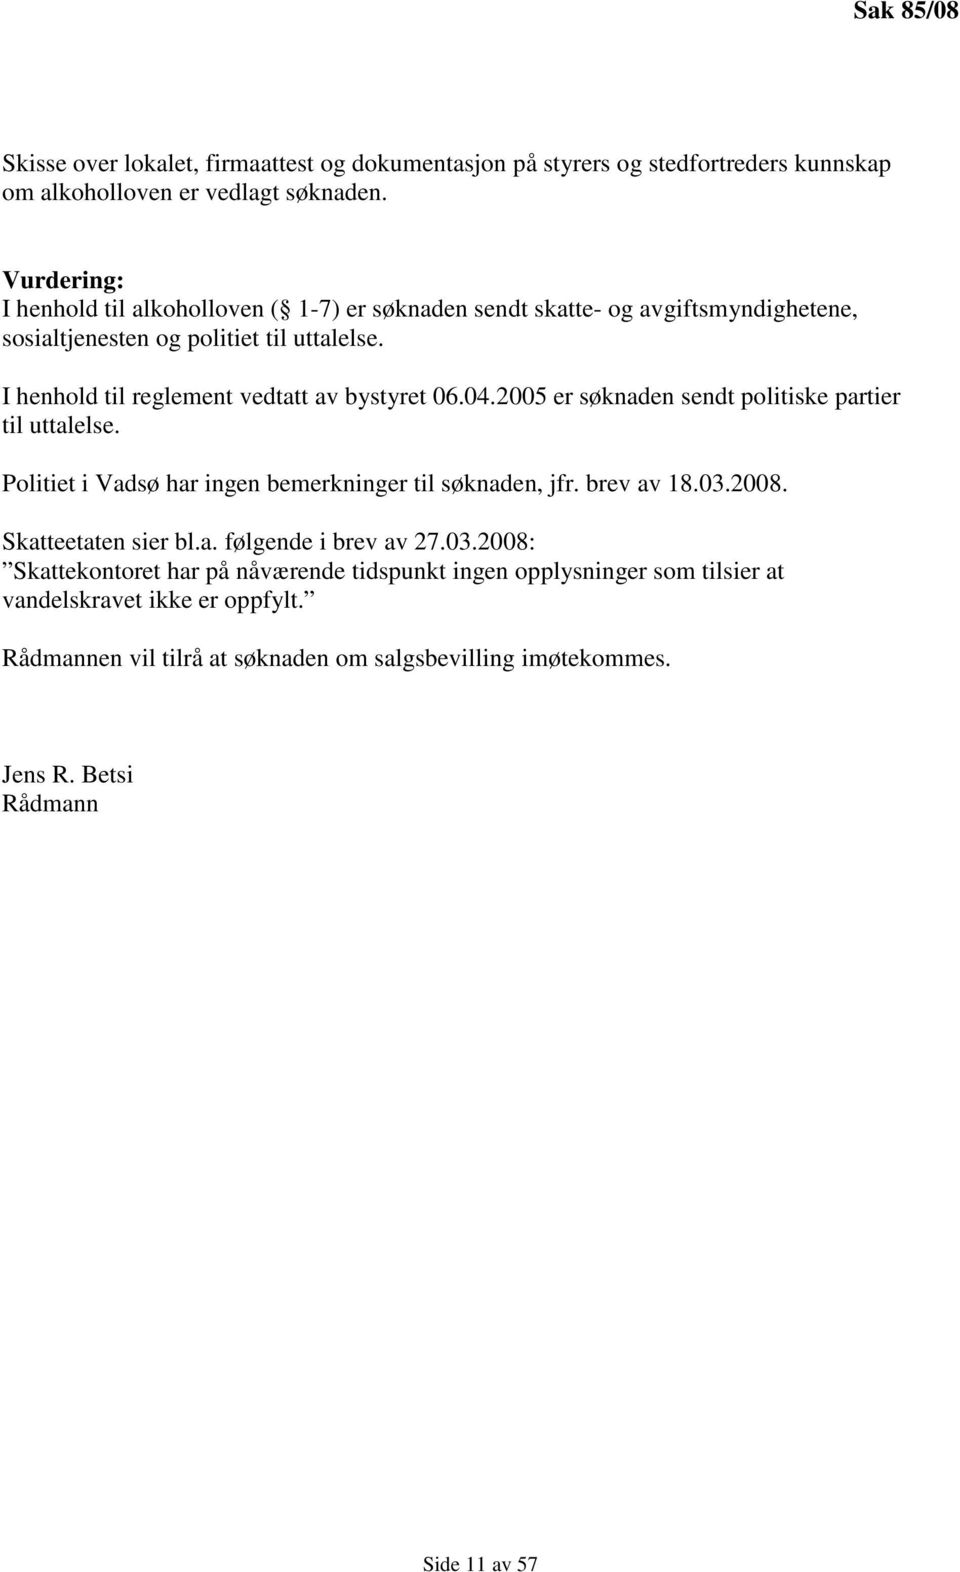 I henhold til reglement vedtatt av bystyret 06.04.2005 er søknaden sendt politiske partier til uttalelse. Politiet i Vadsø har ingen bemerkninger til søknaden, jfr. brev av 18.03.